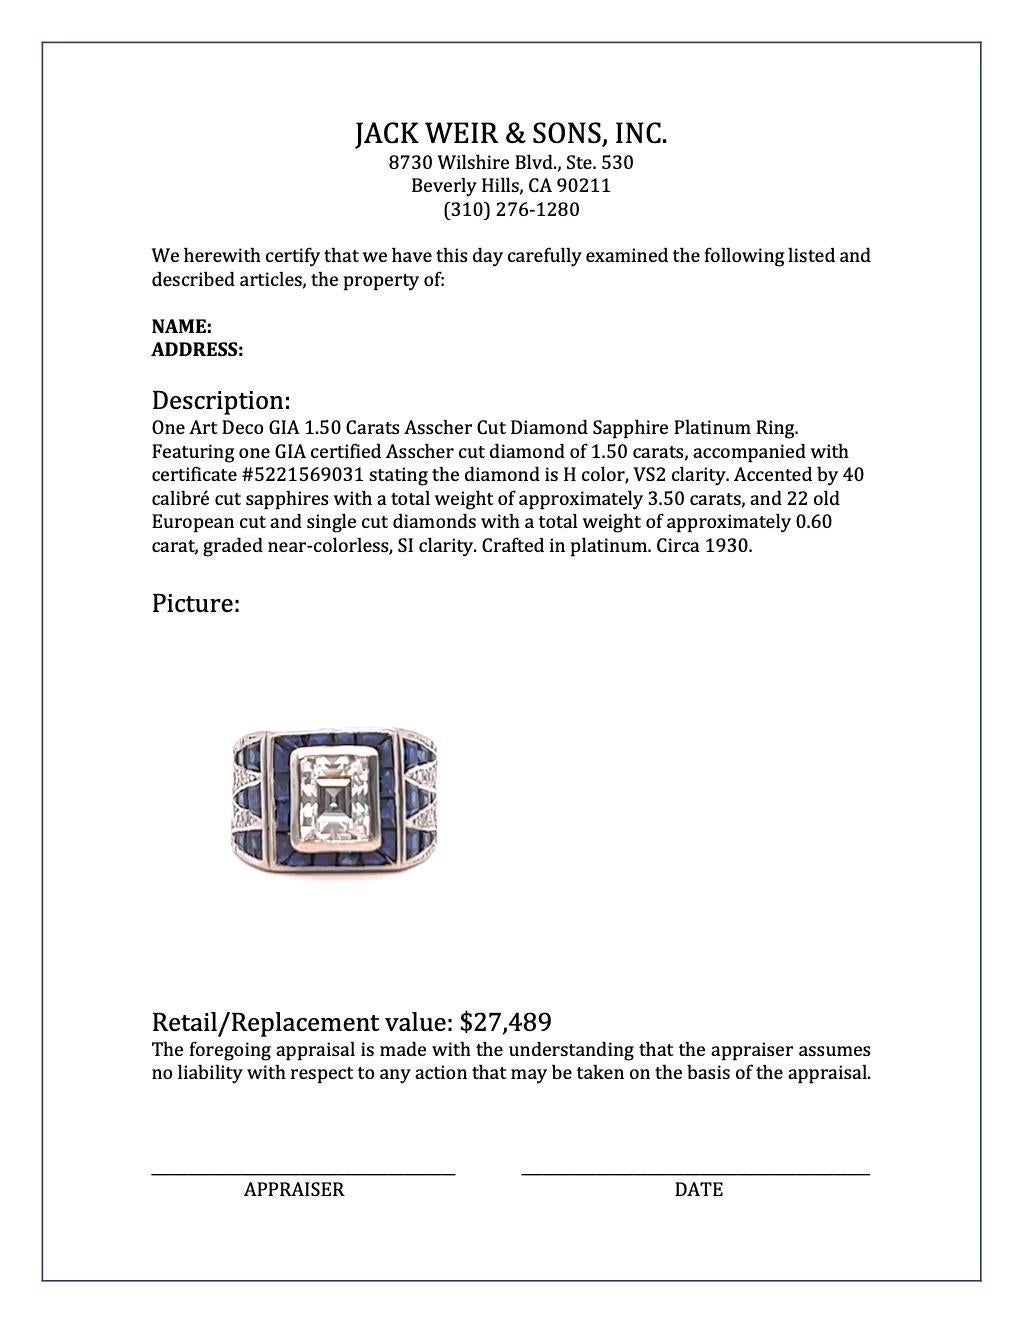 Art Deco GIA 1.50 Carats Asscher Cut Diamond Sapphire Platinum Ring 5